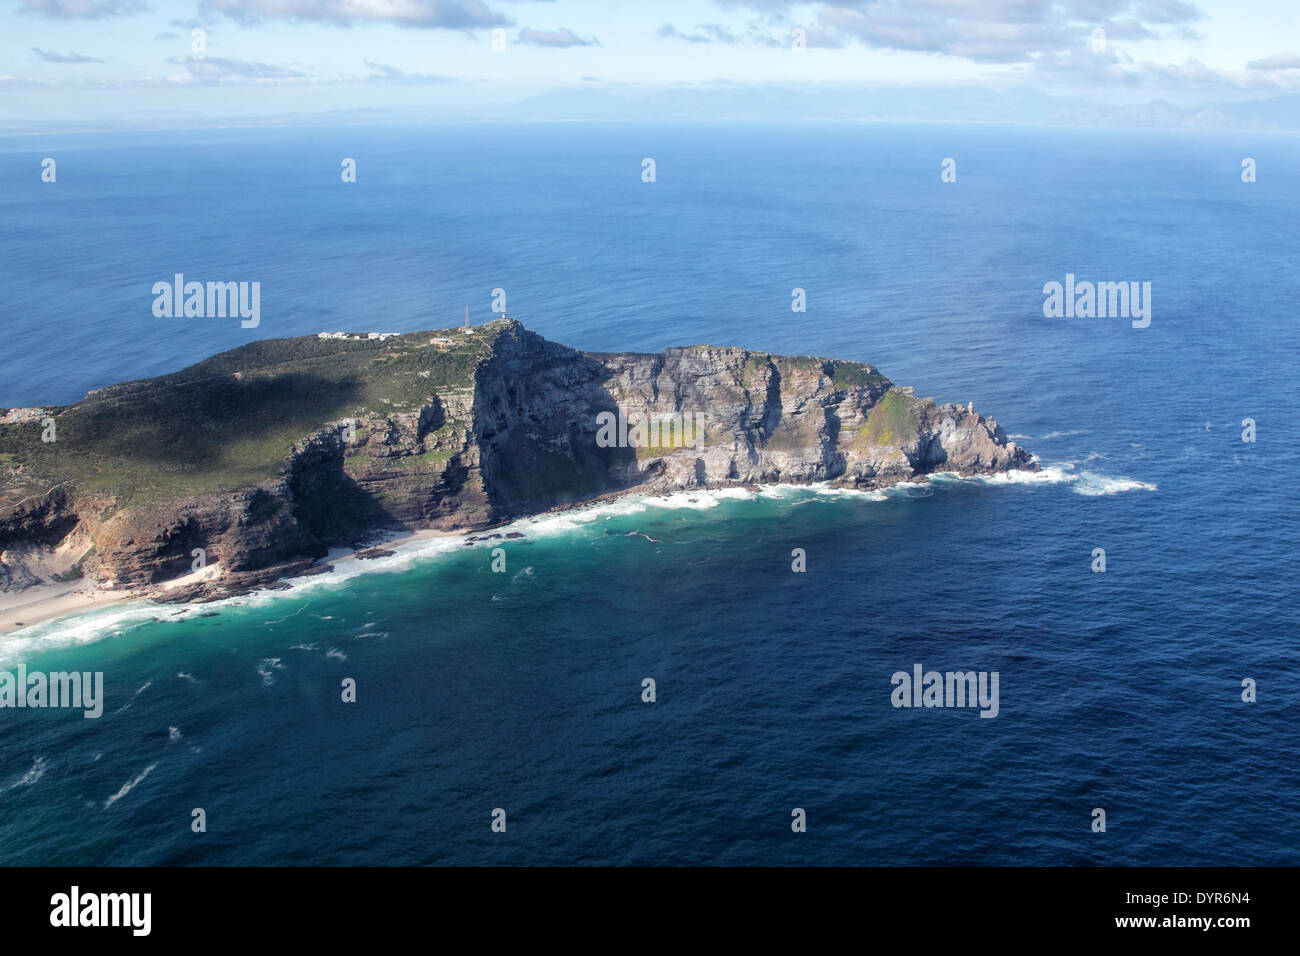 Vue aérienne de la pointe du Cap, l'extrémité sud de la péninsule du Cap, près de Cape Town, Afrique du Sud. Banque D'Images